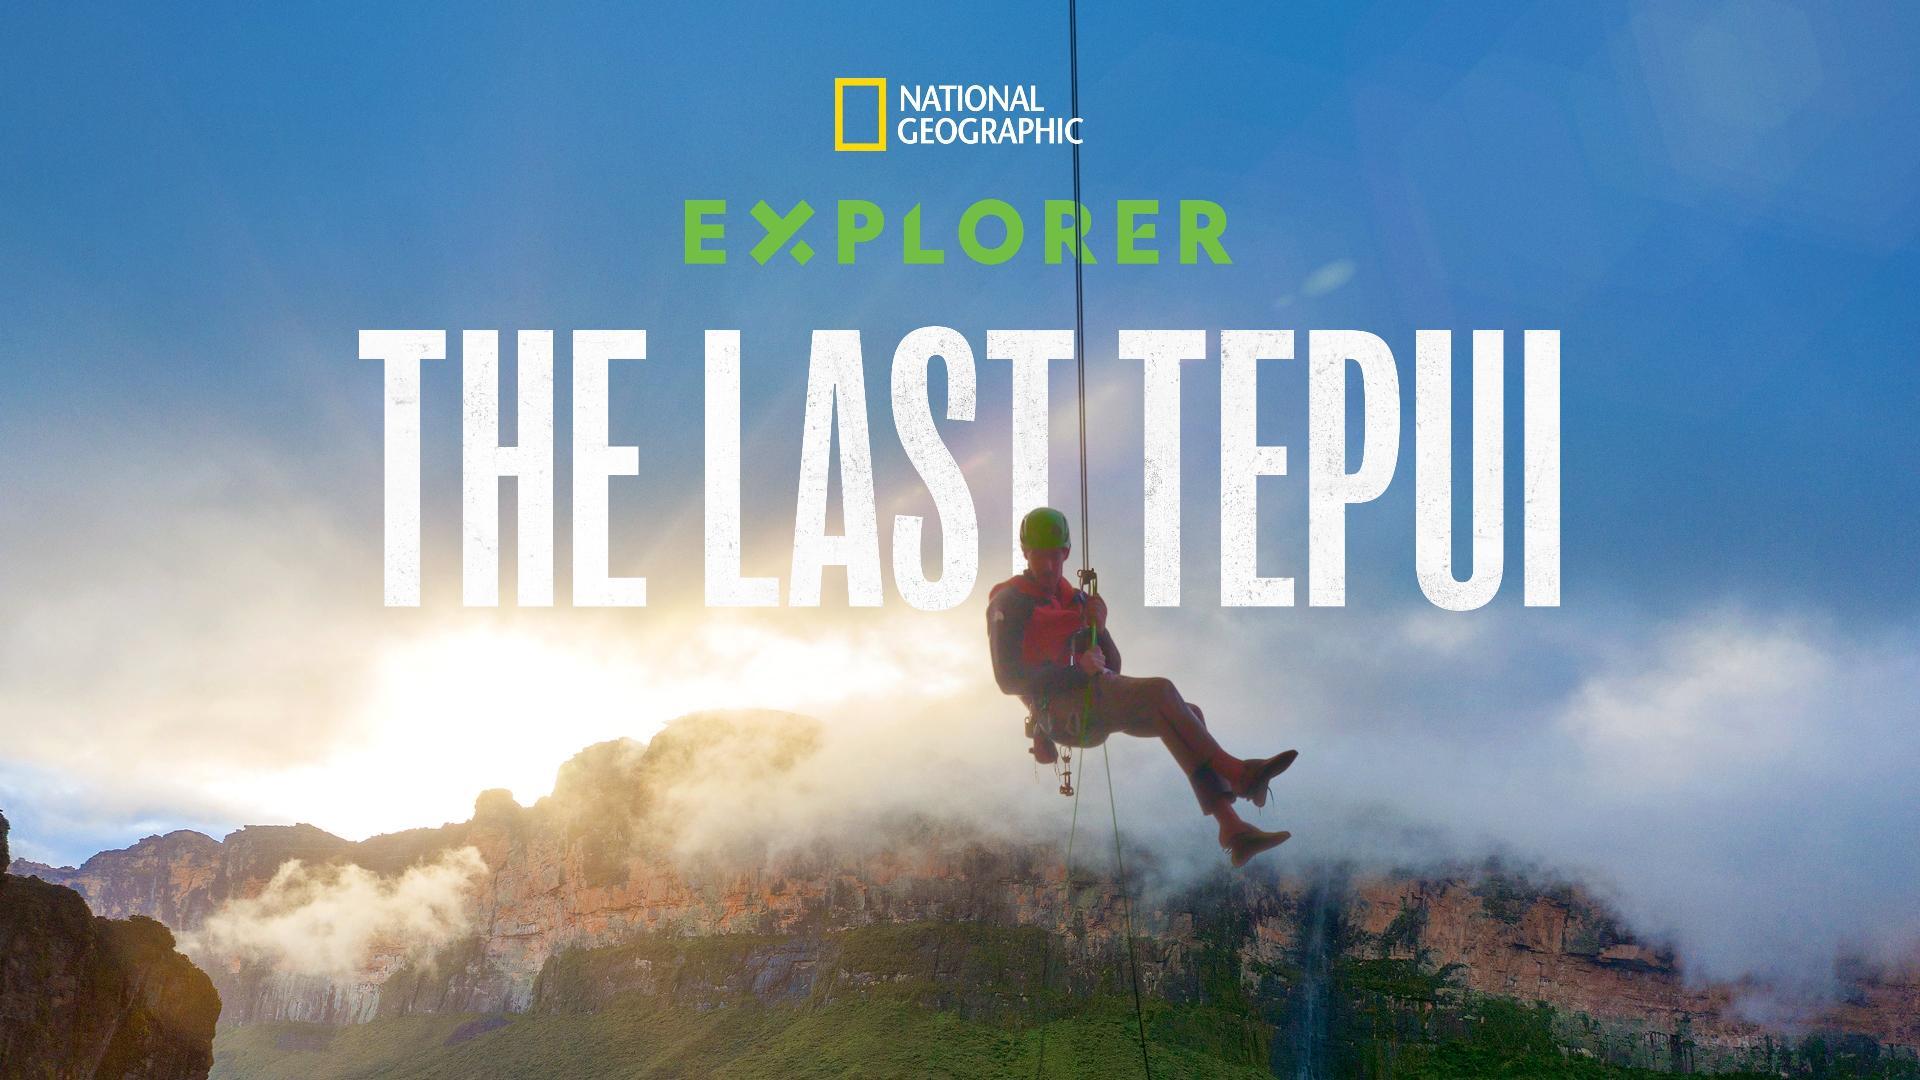 მკვლევარი: უკანასკნელი ტეპუი / Explorer: The Last Tepui